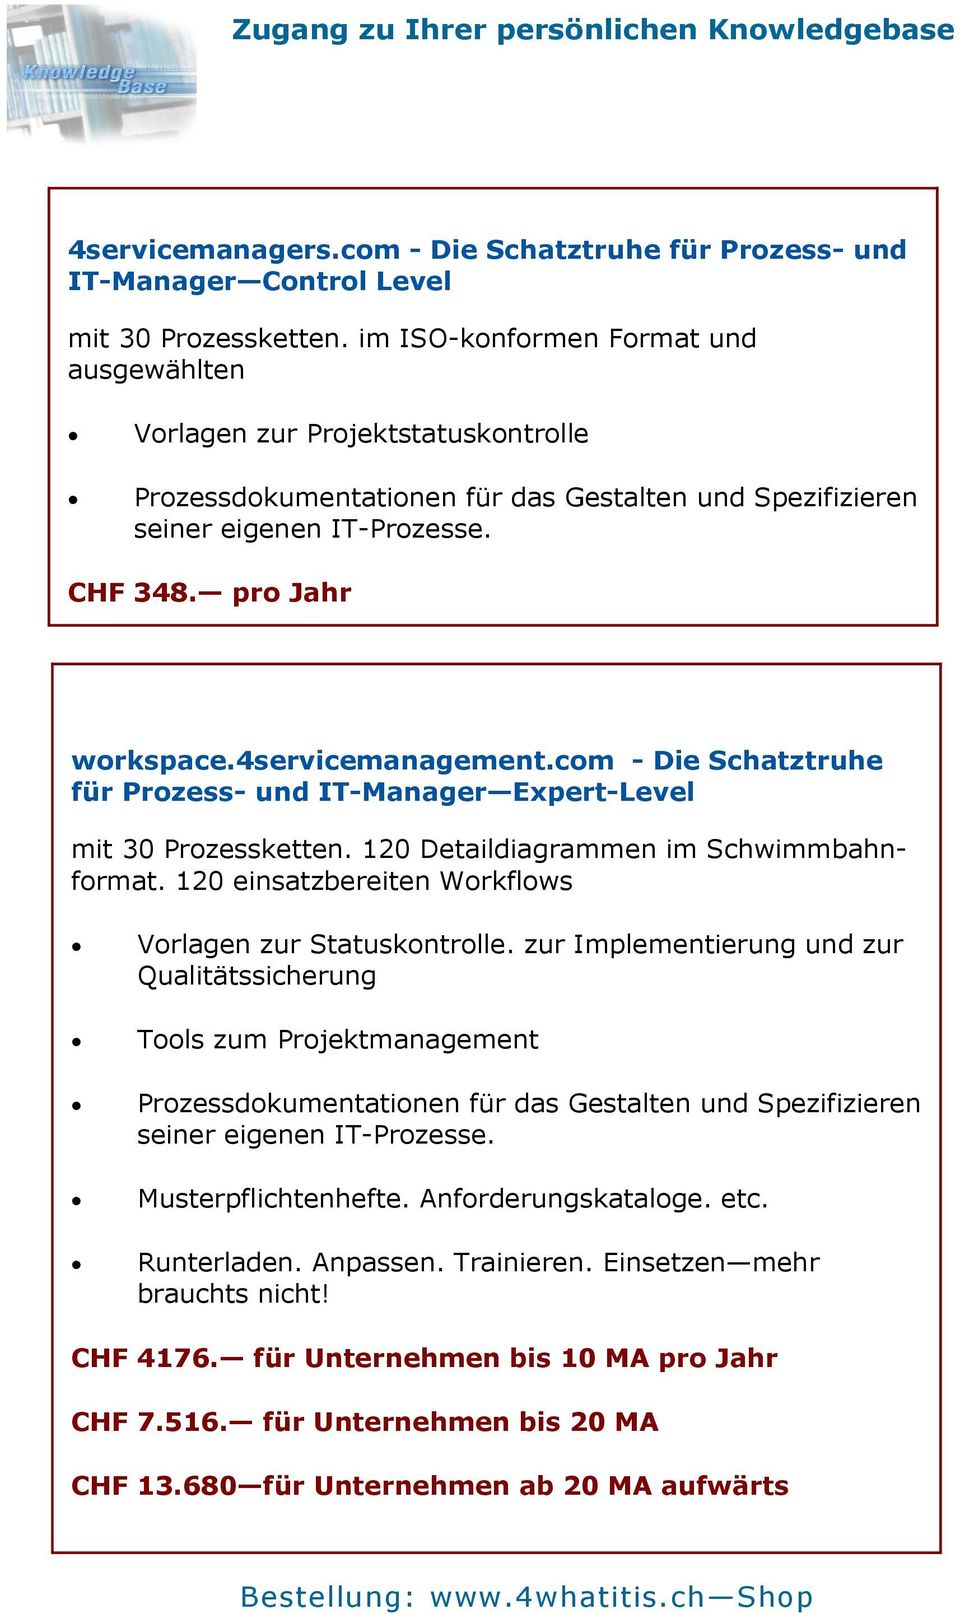 4servicemanagement.com - Die Schatztruhe für Prozess- und IT-Manager Expert-Level mit 30 Prozessketten. 120 Detaildiagrammen im Schwimmbahnformat.